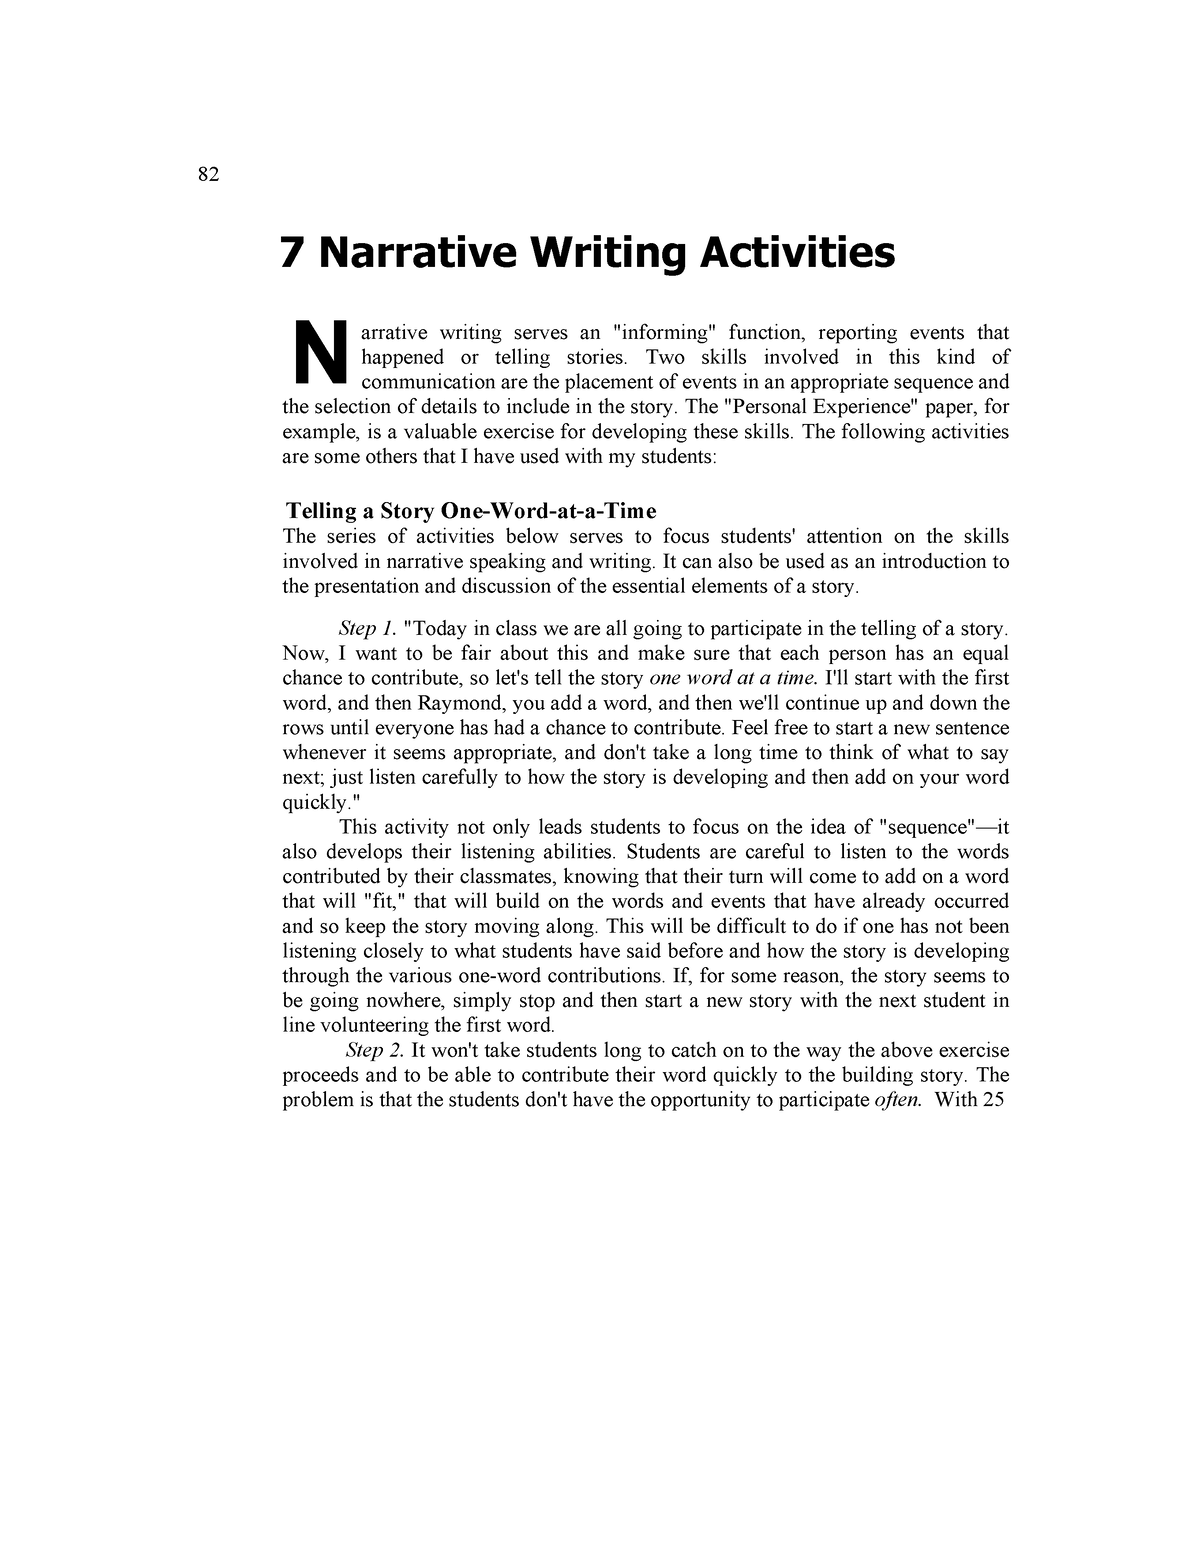 Narrative Writing Activities - 82 7 Narrative Writing Activities N ...